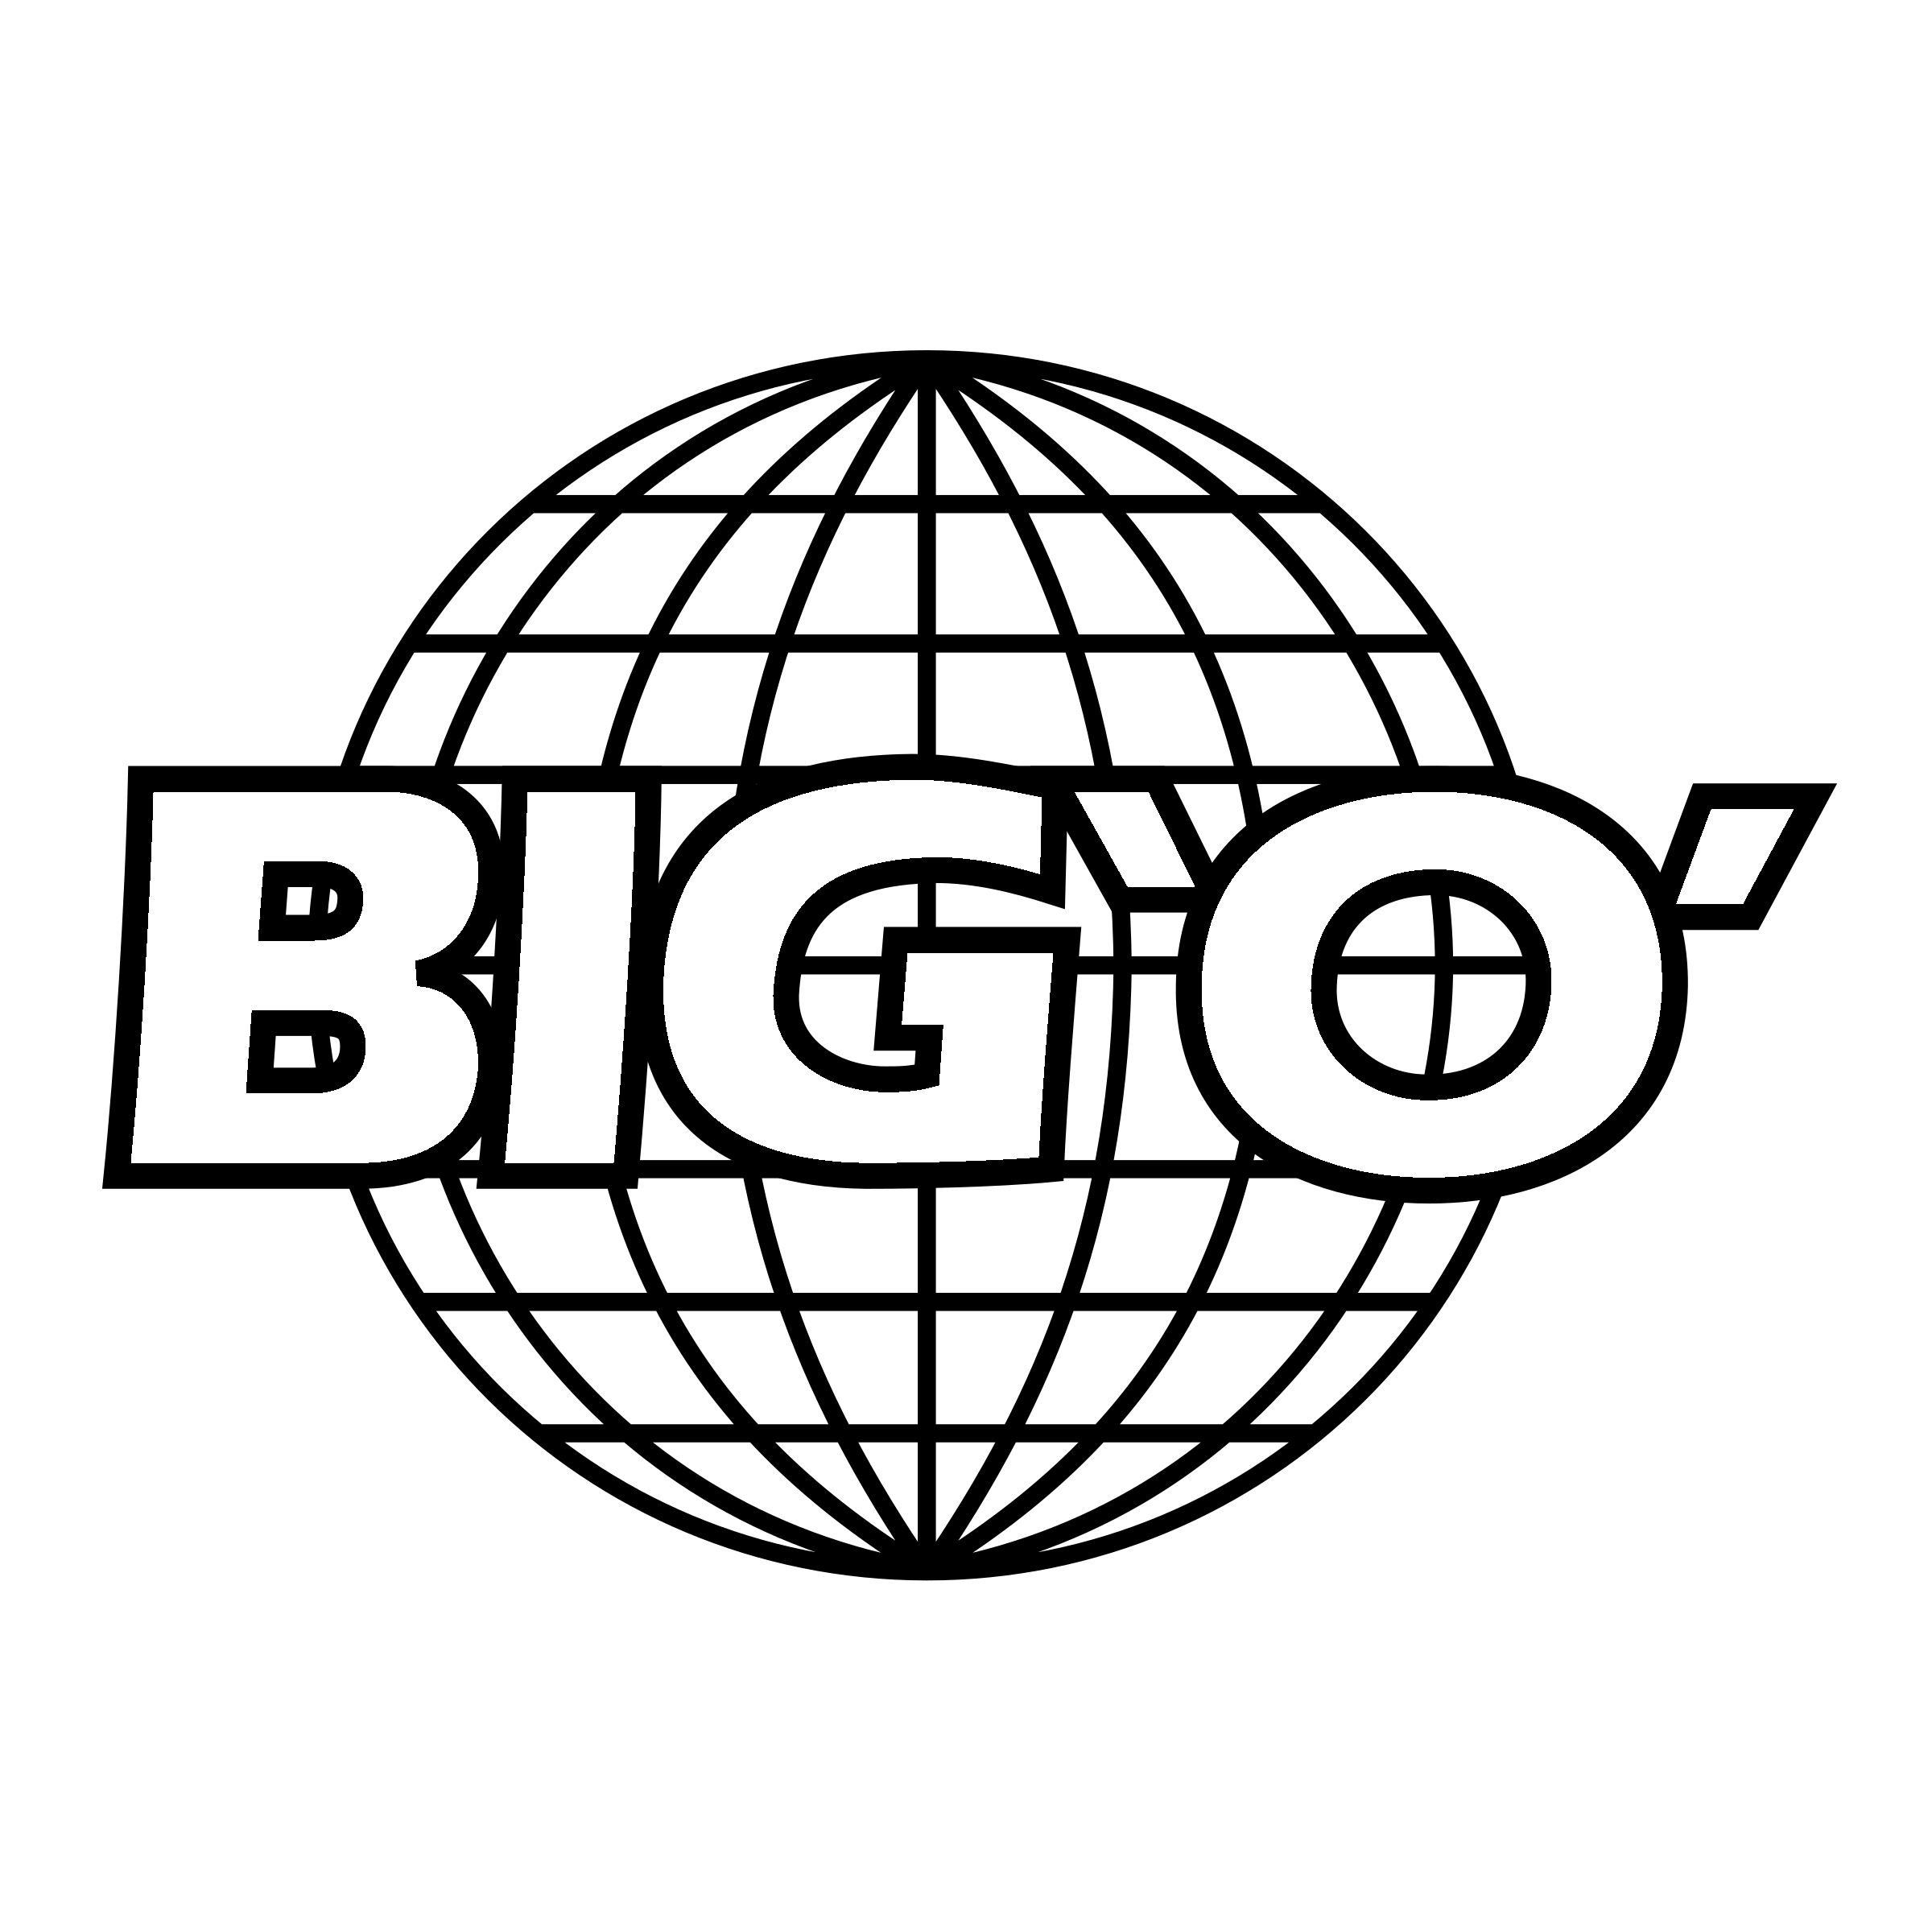 Big O Logo - Big 'O' 01 Logo PNG Transparent & SVG Vector - Freebie Supply